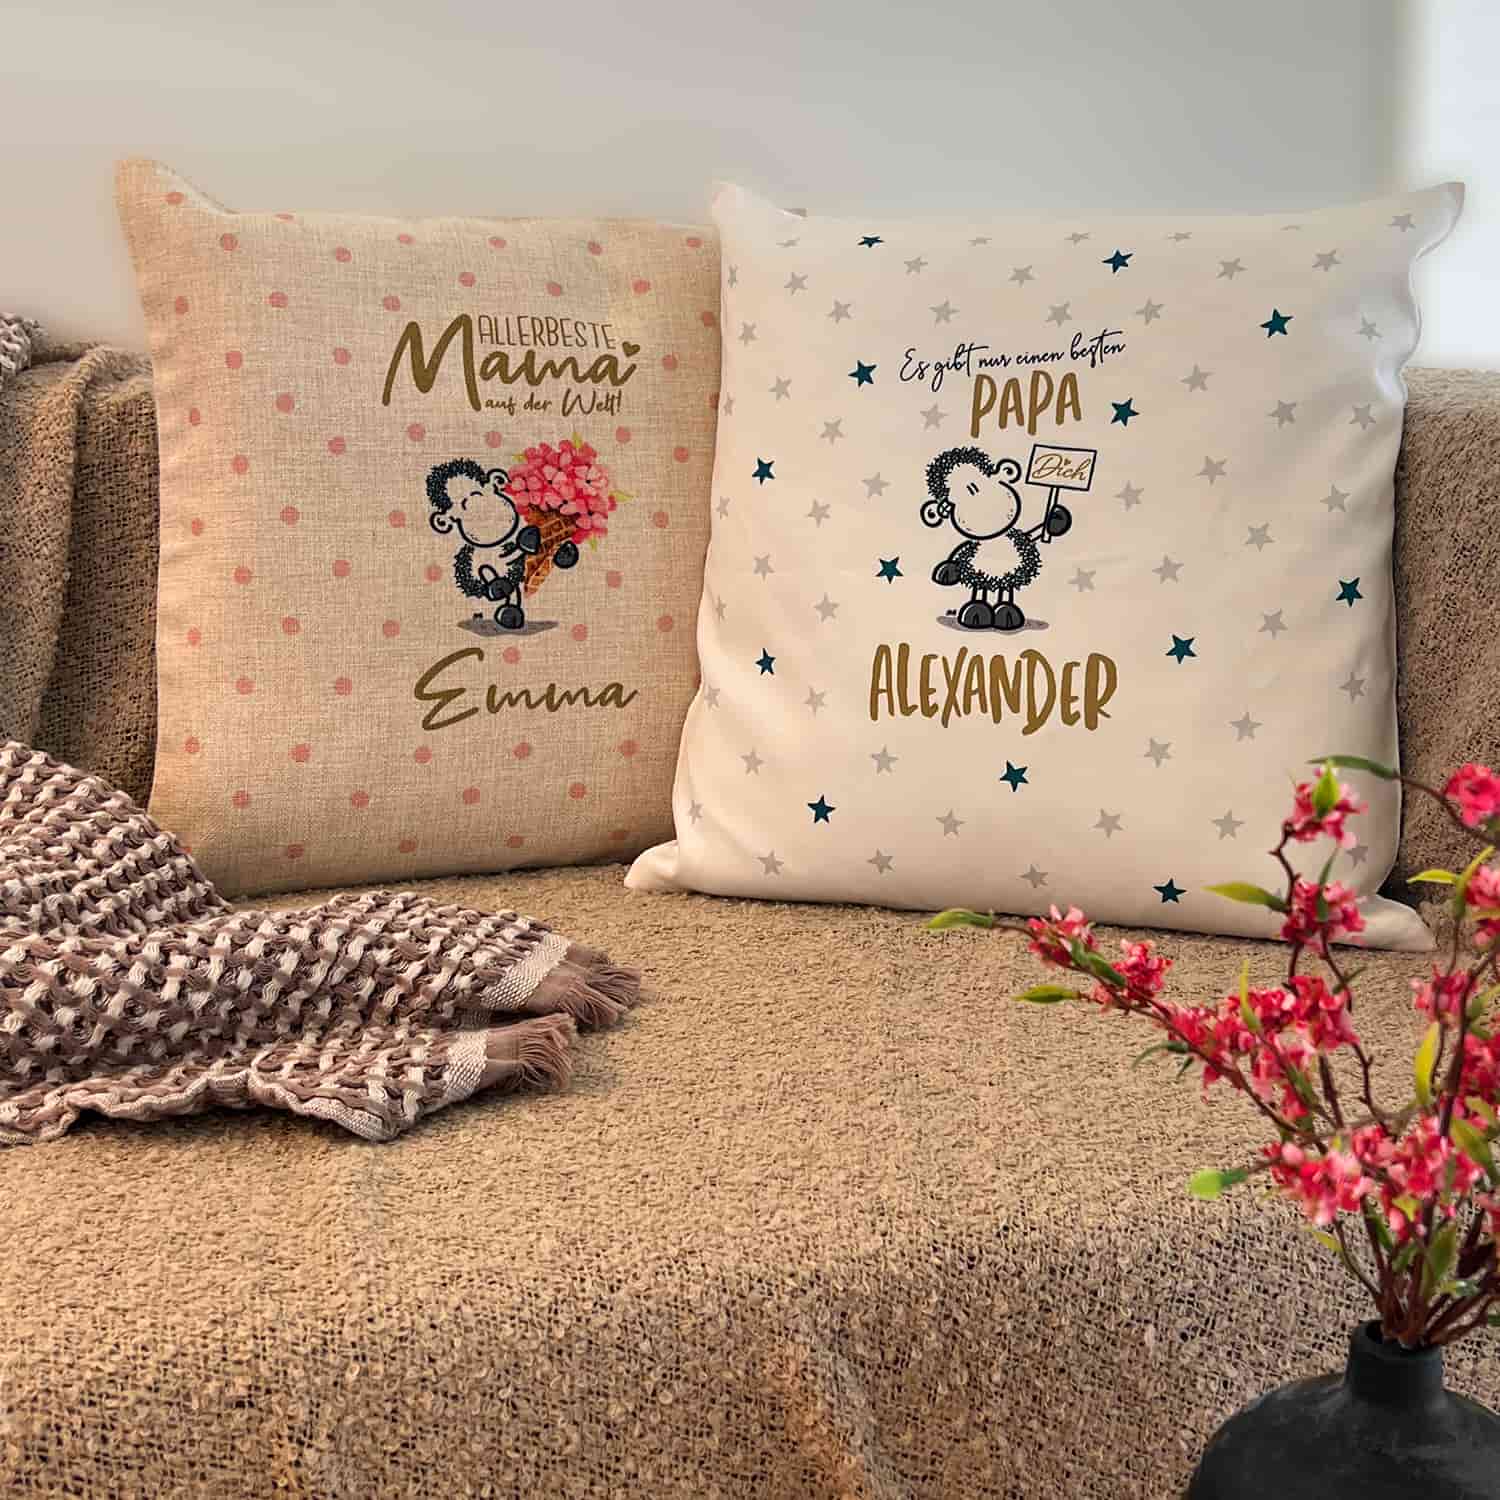 Zwei Personalisierte Kissen für Mama und Papa mit Emma und Alexander als Beispielsnamen auf einer Couch